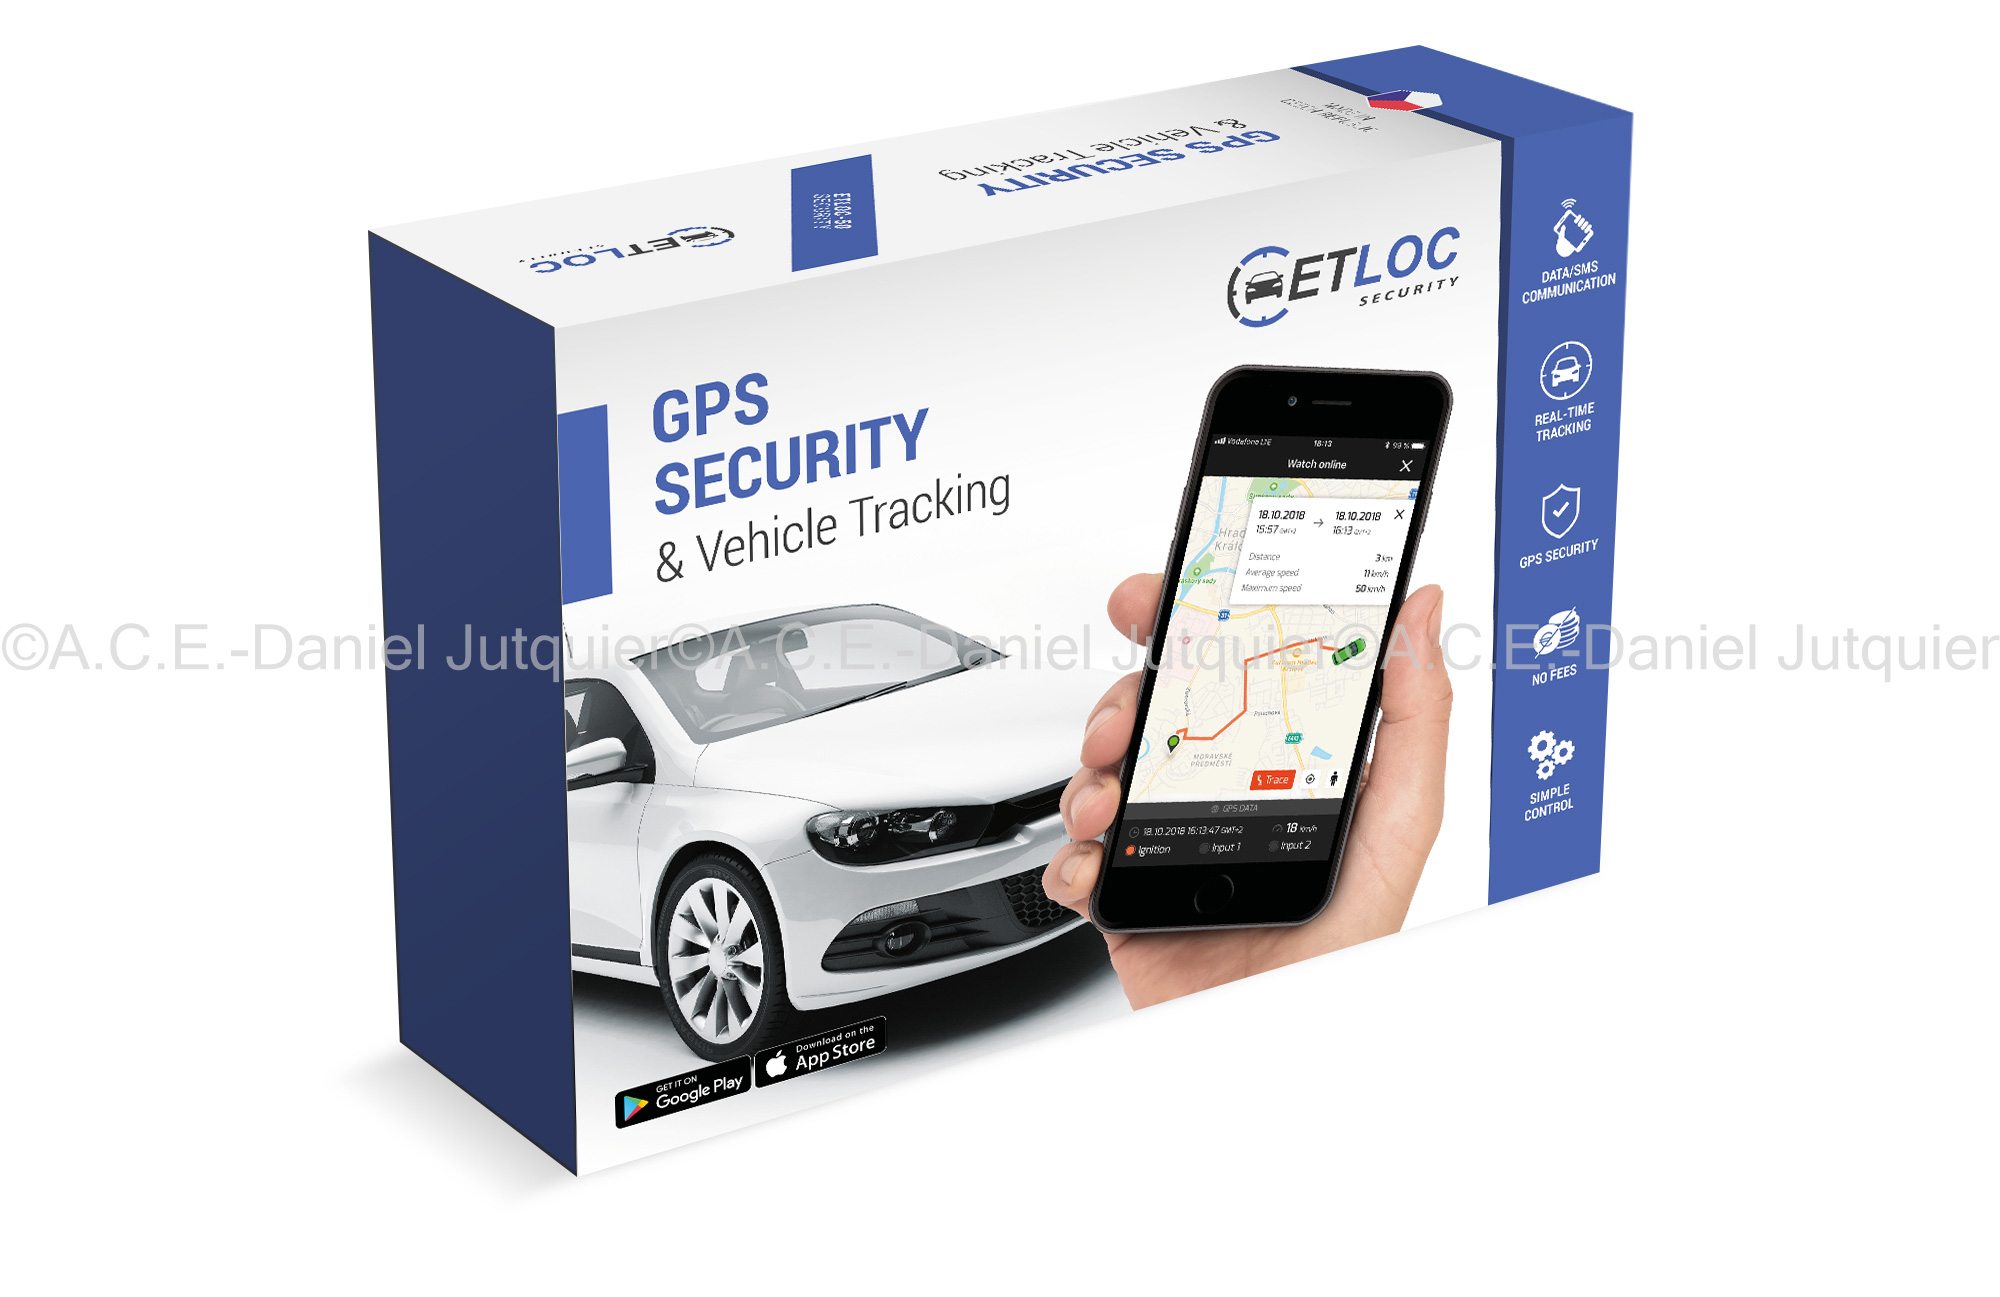 Originalverpackung des GPS Fahrzeug-Sicherheitssystems Etloc 50s,aceurope.at